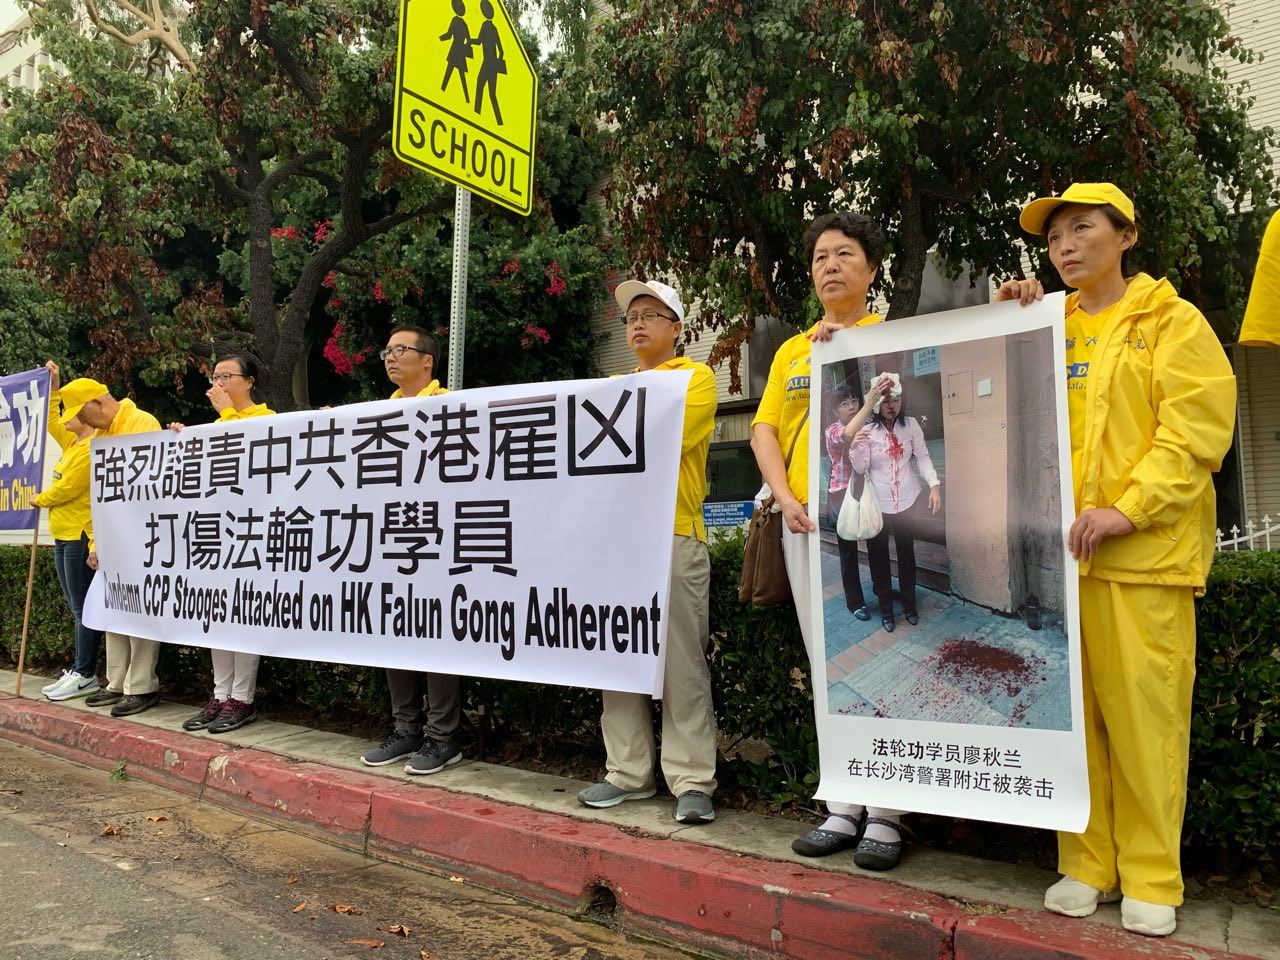 Image for article Los Angeles, Californie : Rassemblement au consulat chinois condamnant l'attaque d'une pratiquante de Falun Gong par des voyous communistes à Hong Kong